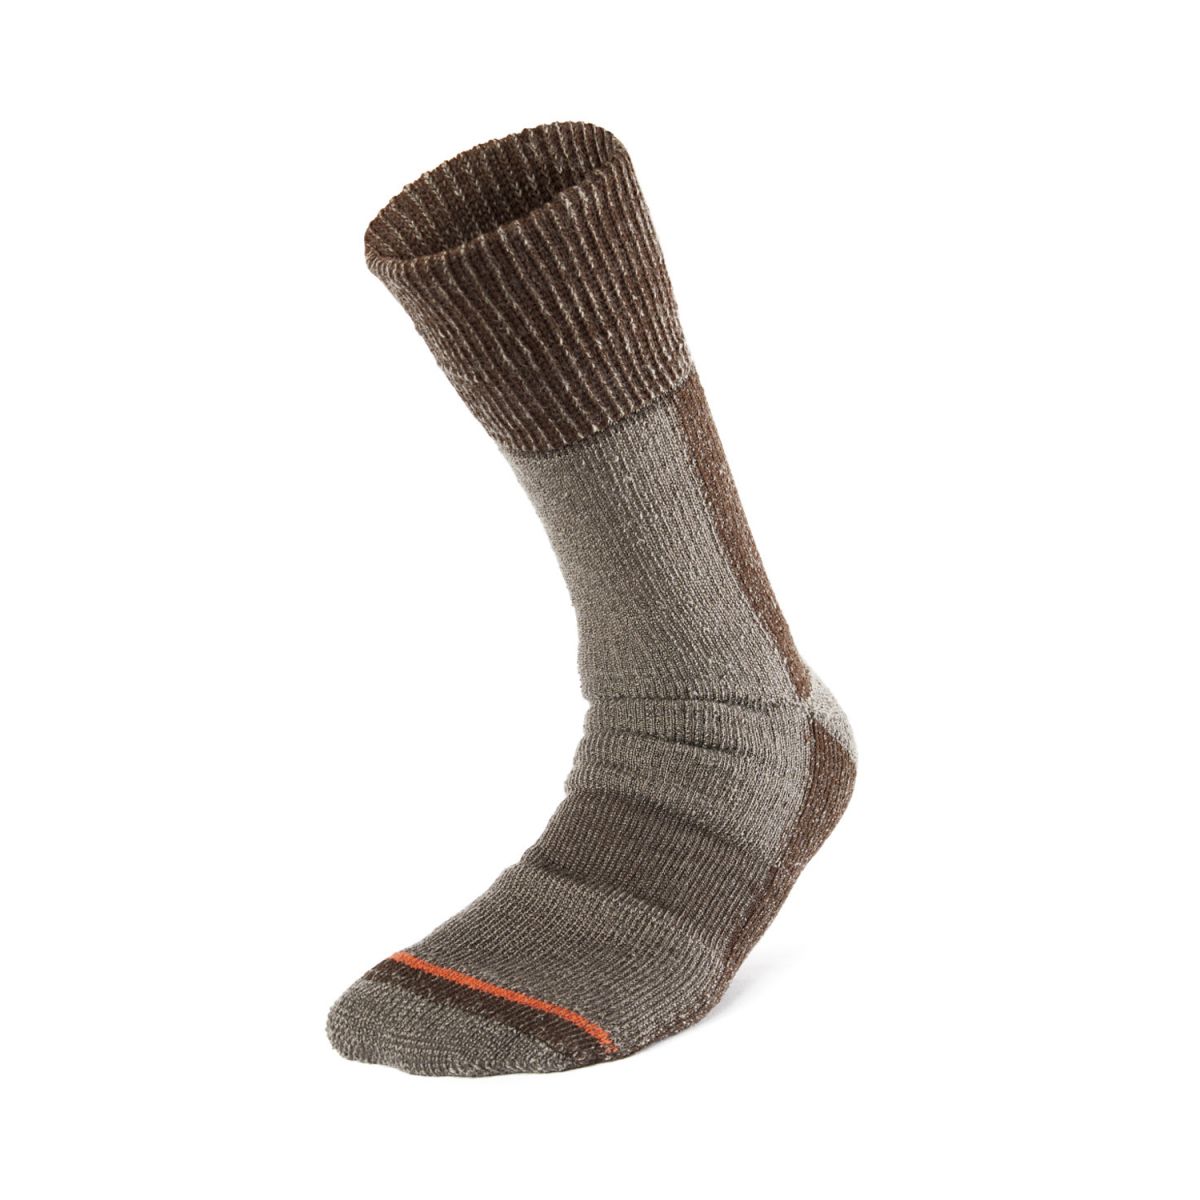 Woolly Sock Brown - Stockings // Socks - Geoff Anderson